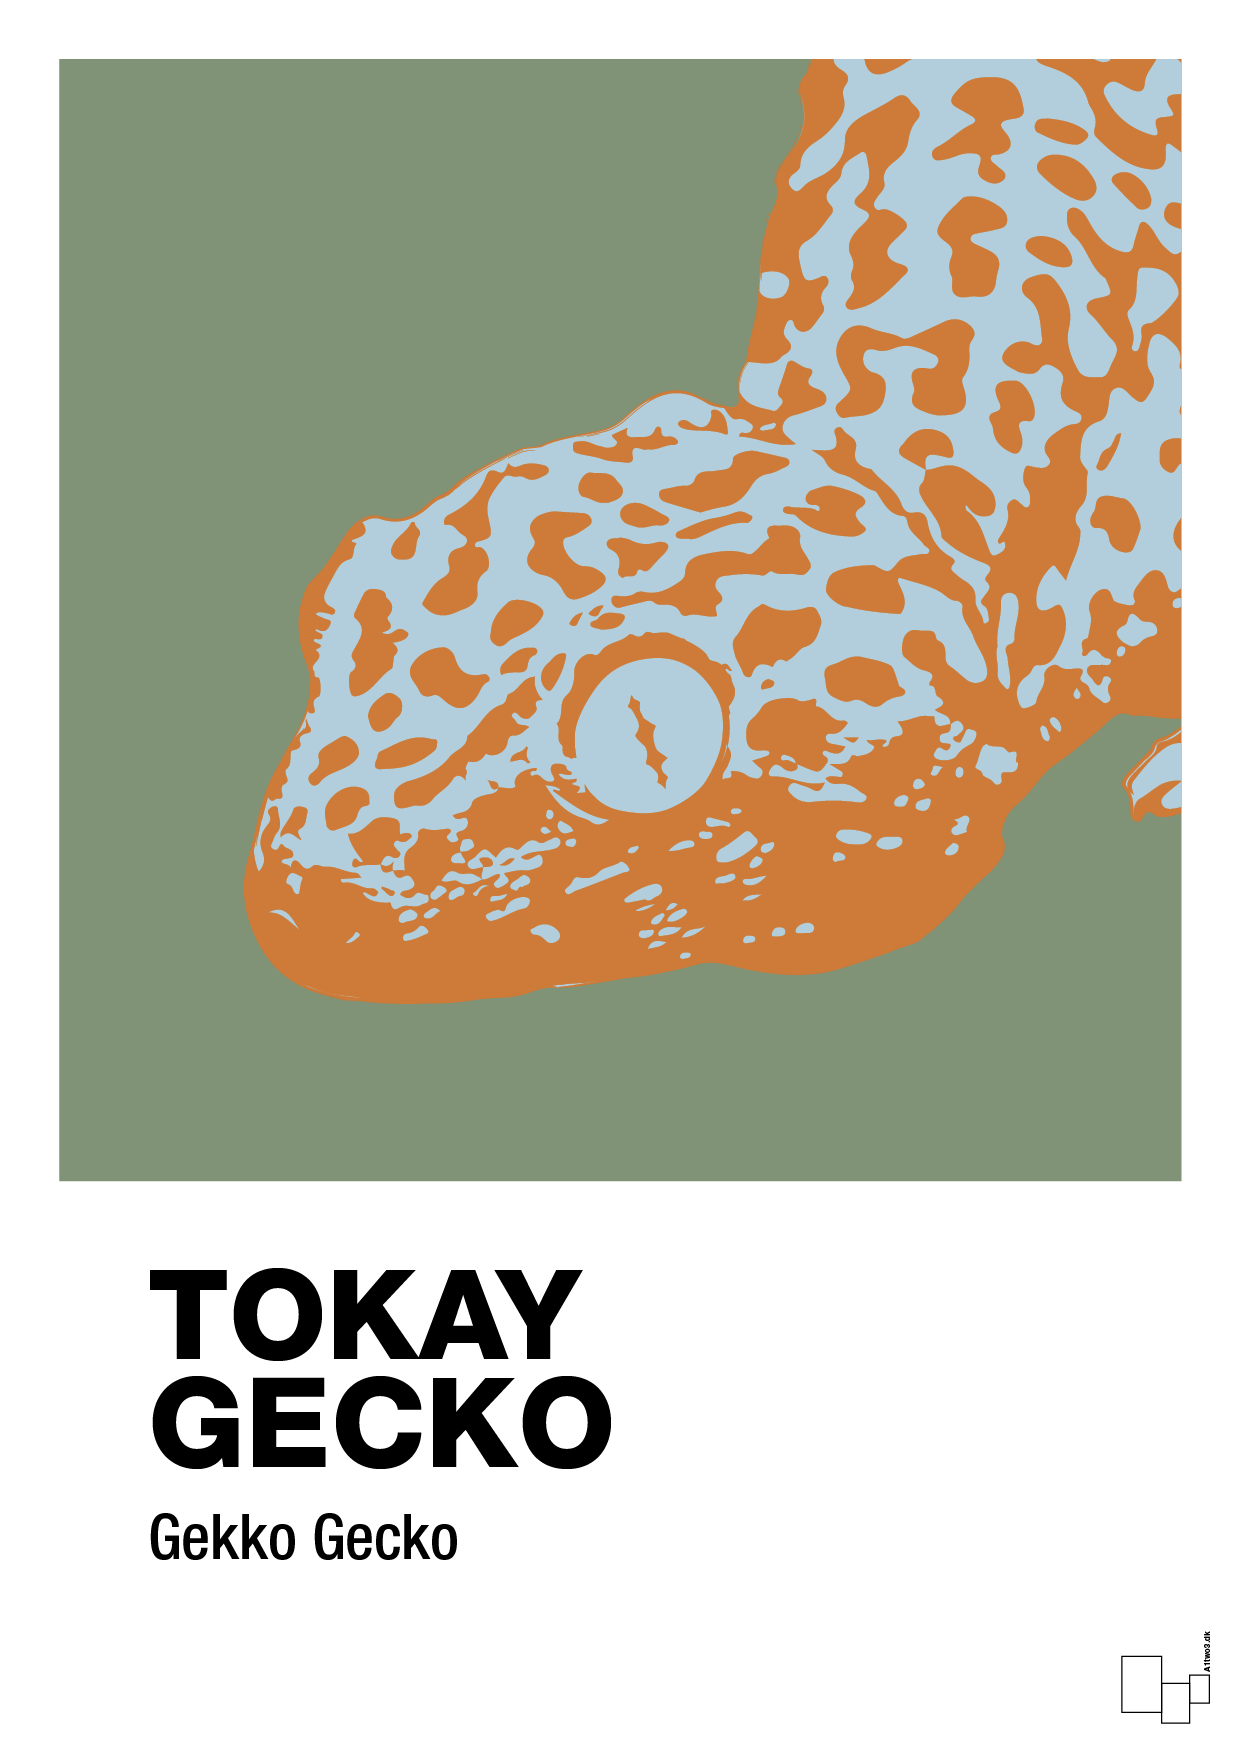 tokay gecko - Plakat med Videnskab i Jade